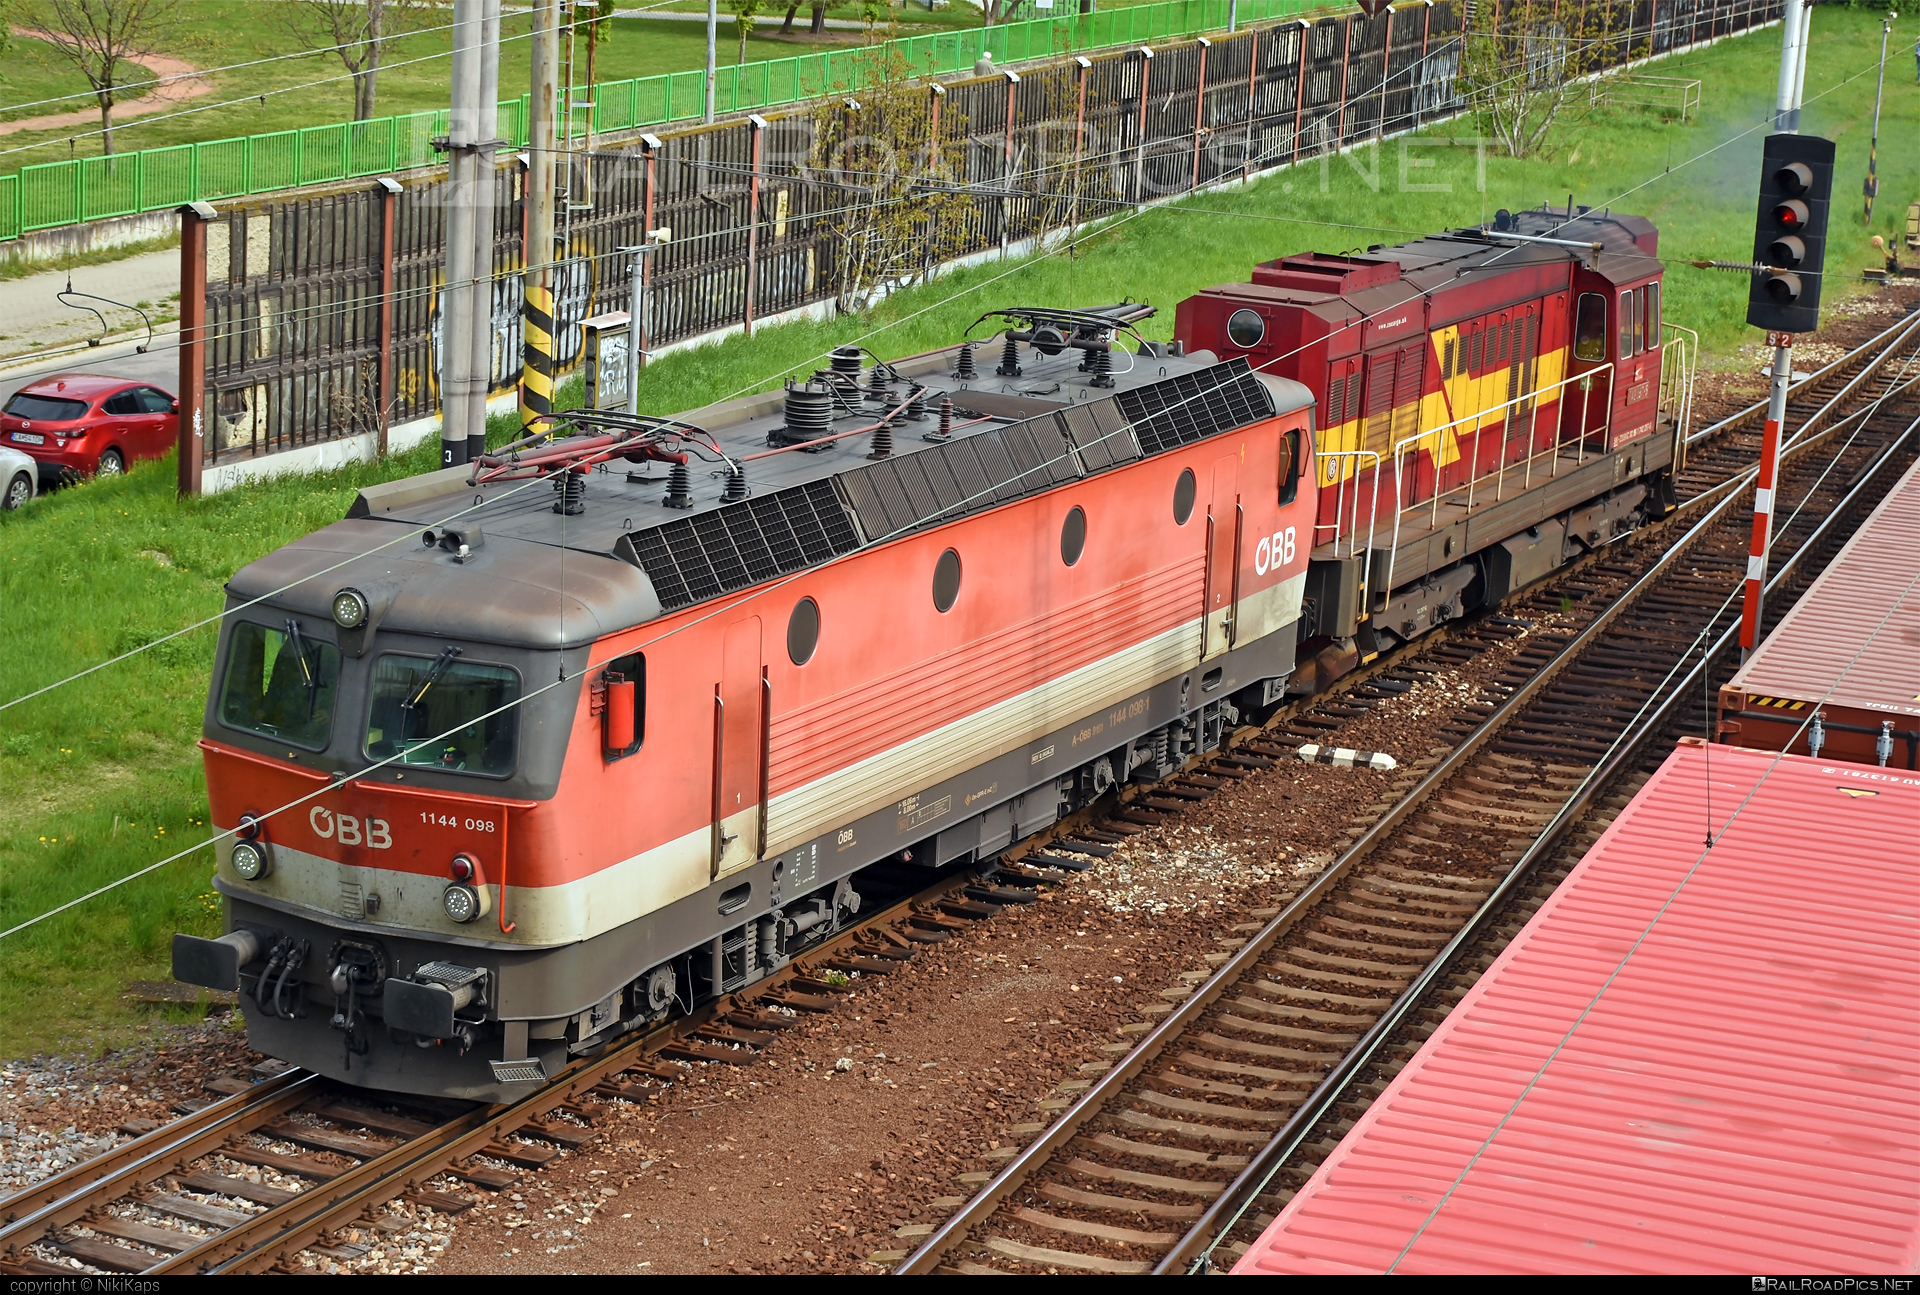 SGP 1144 - 1144 098 operated by Rail Cargo Austria AG #obb #obb1144 #obbClass1144 #osterreichischebundesbahnen #rcw #sgp #sgp1144 #simmeringgrazpauker